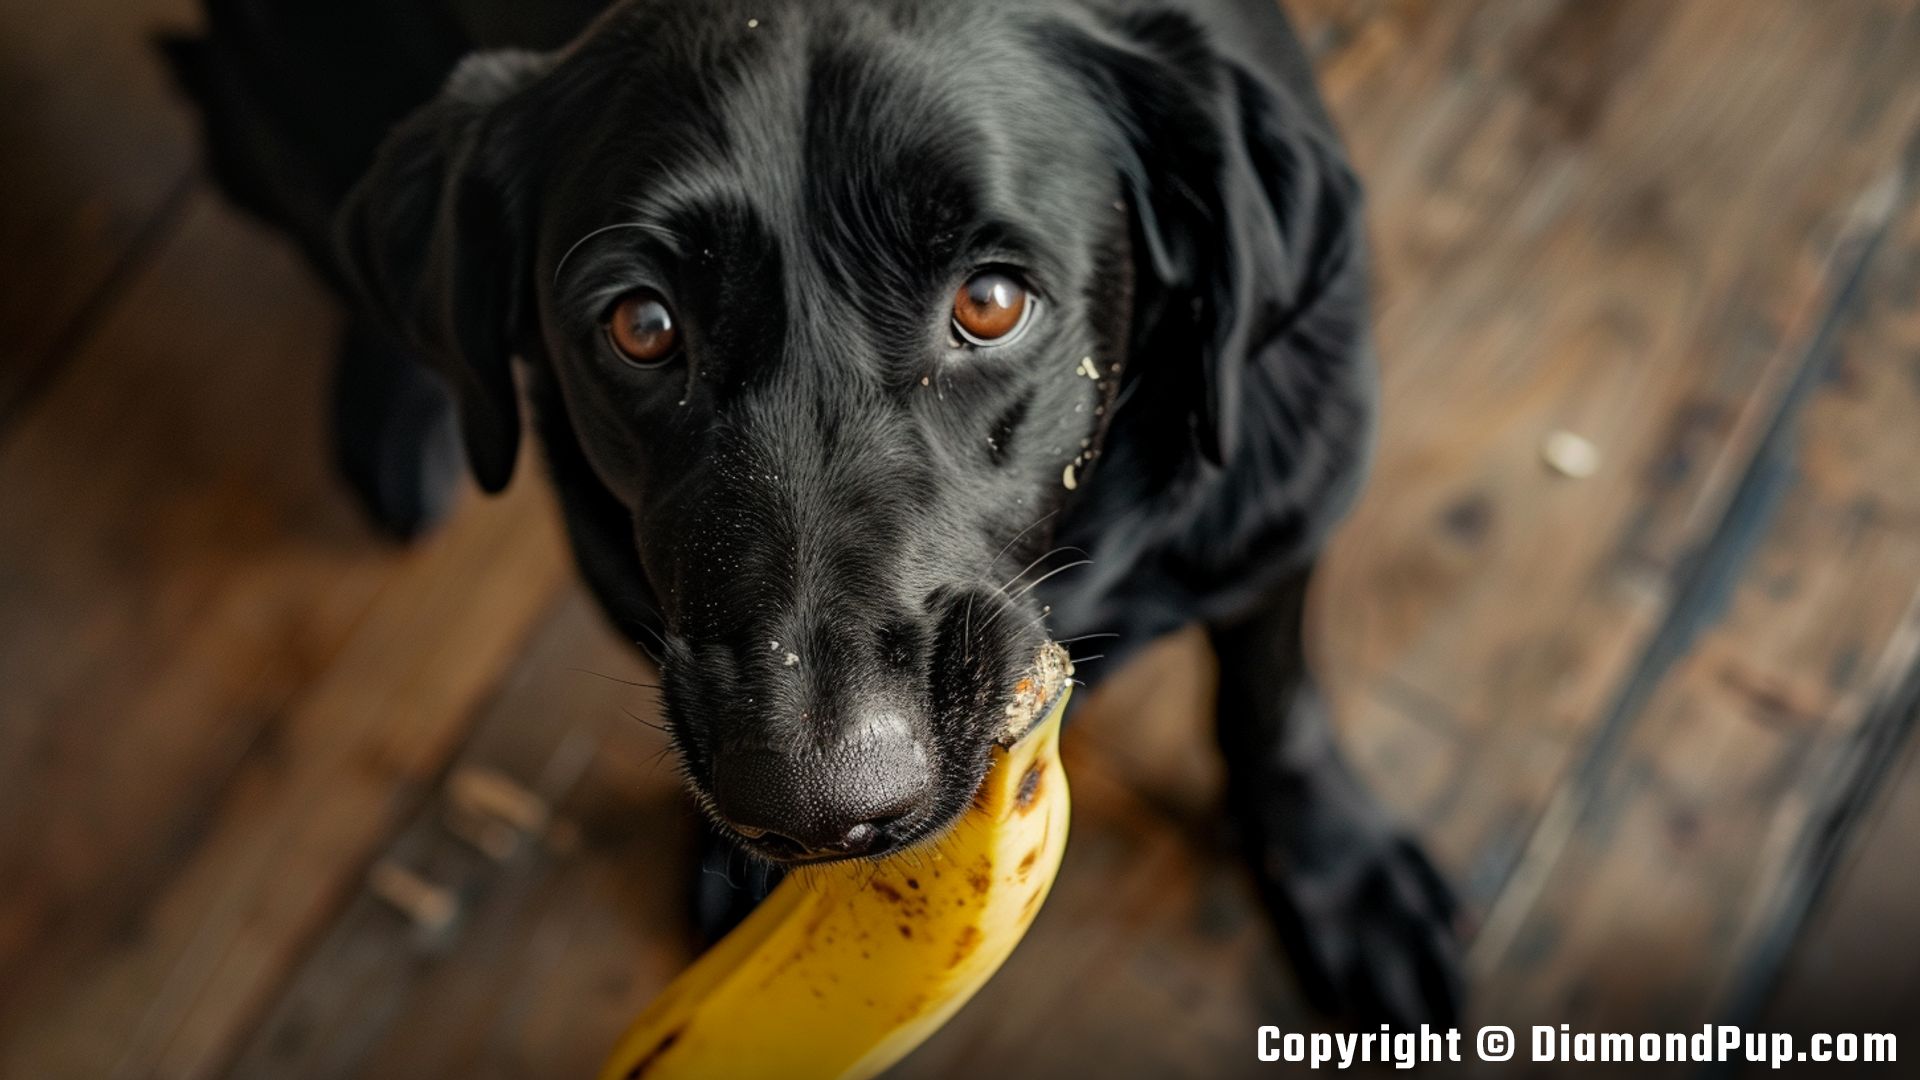 Photograph of a Cute Labrador Snacking on Banana